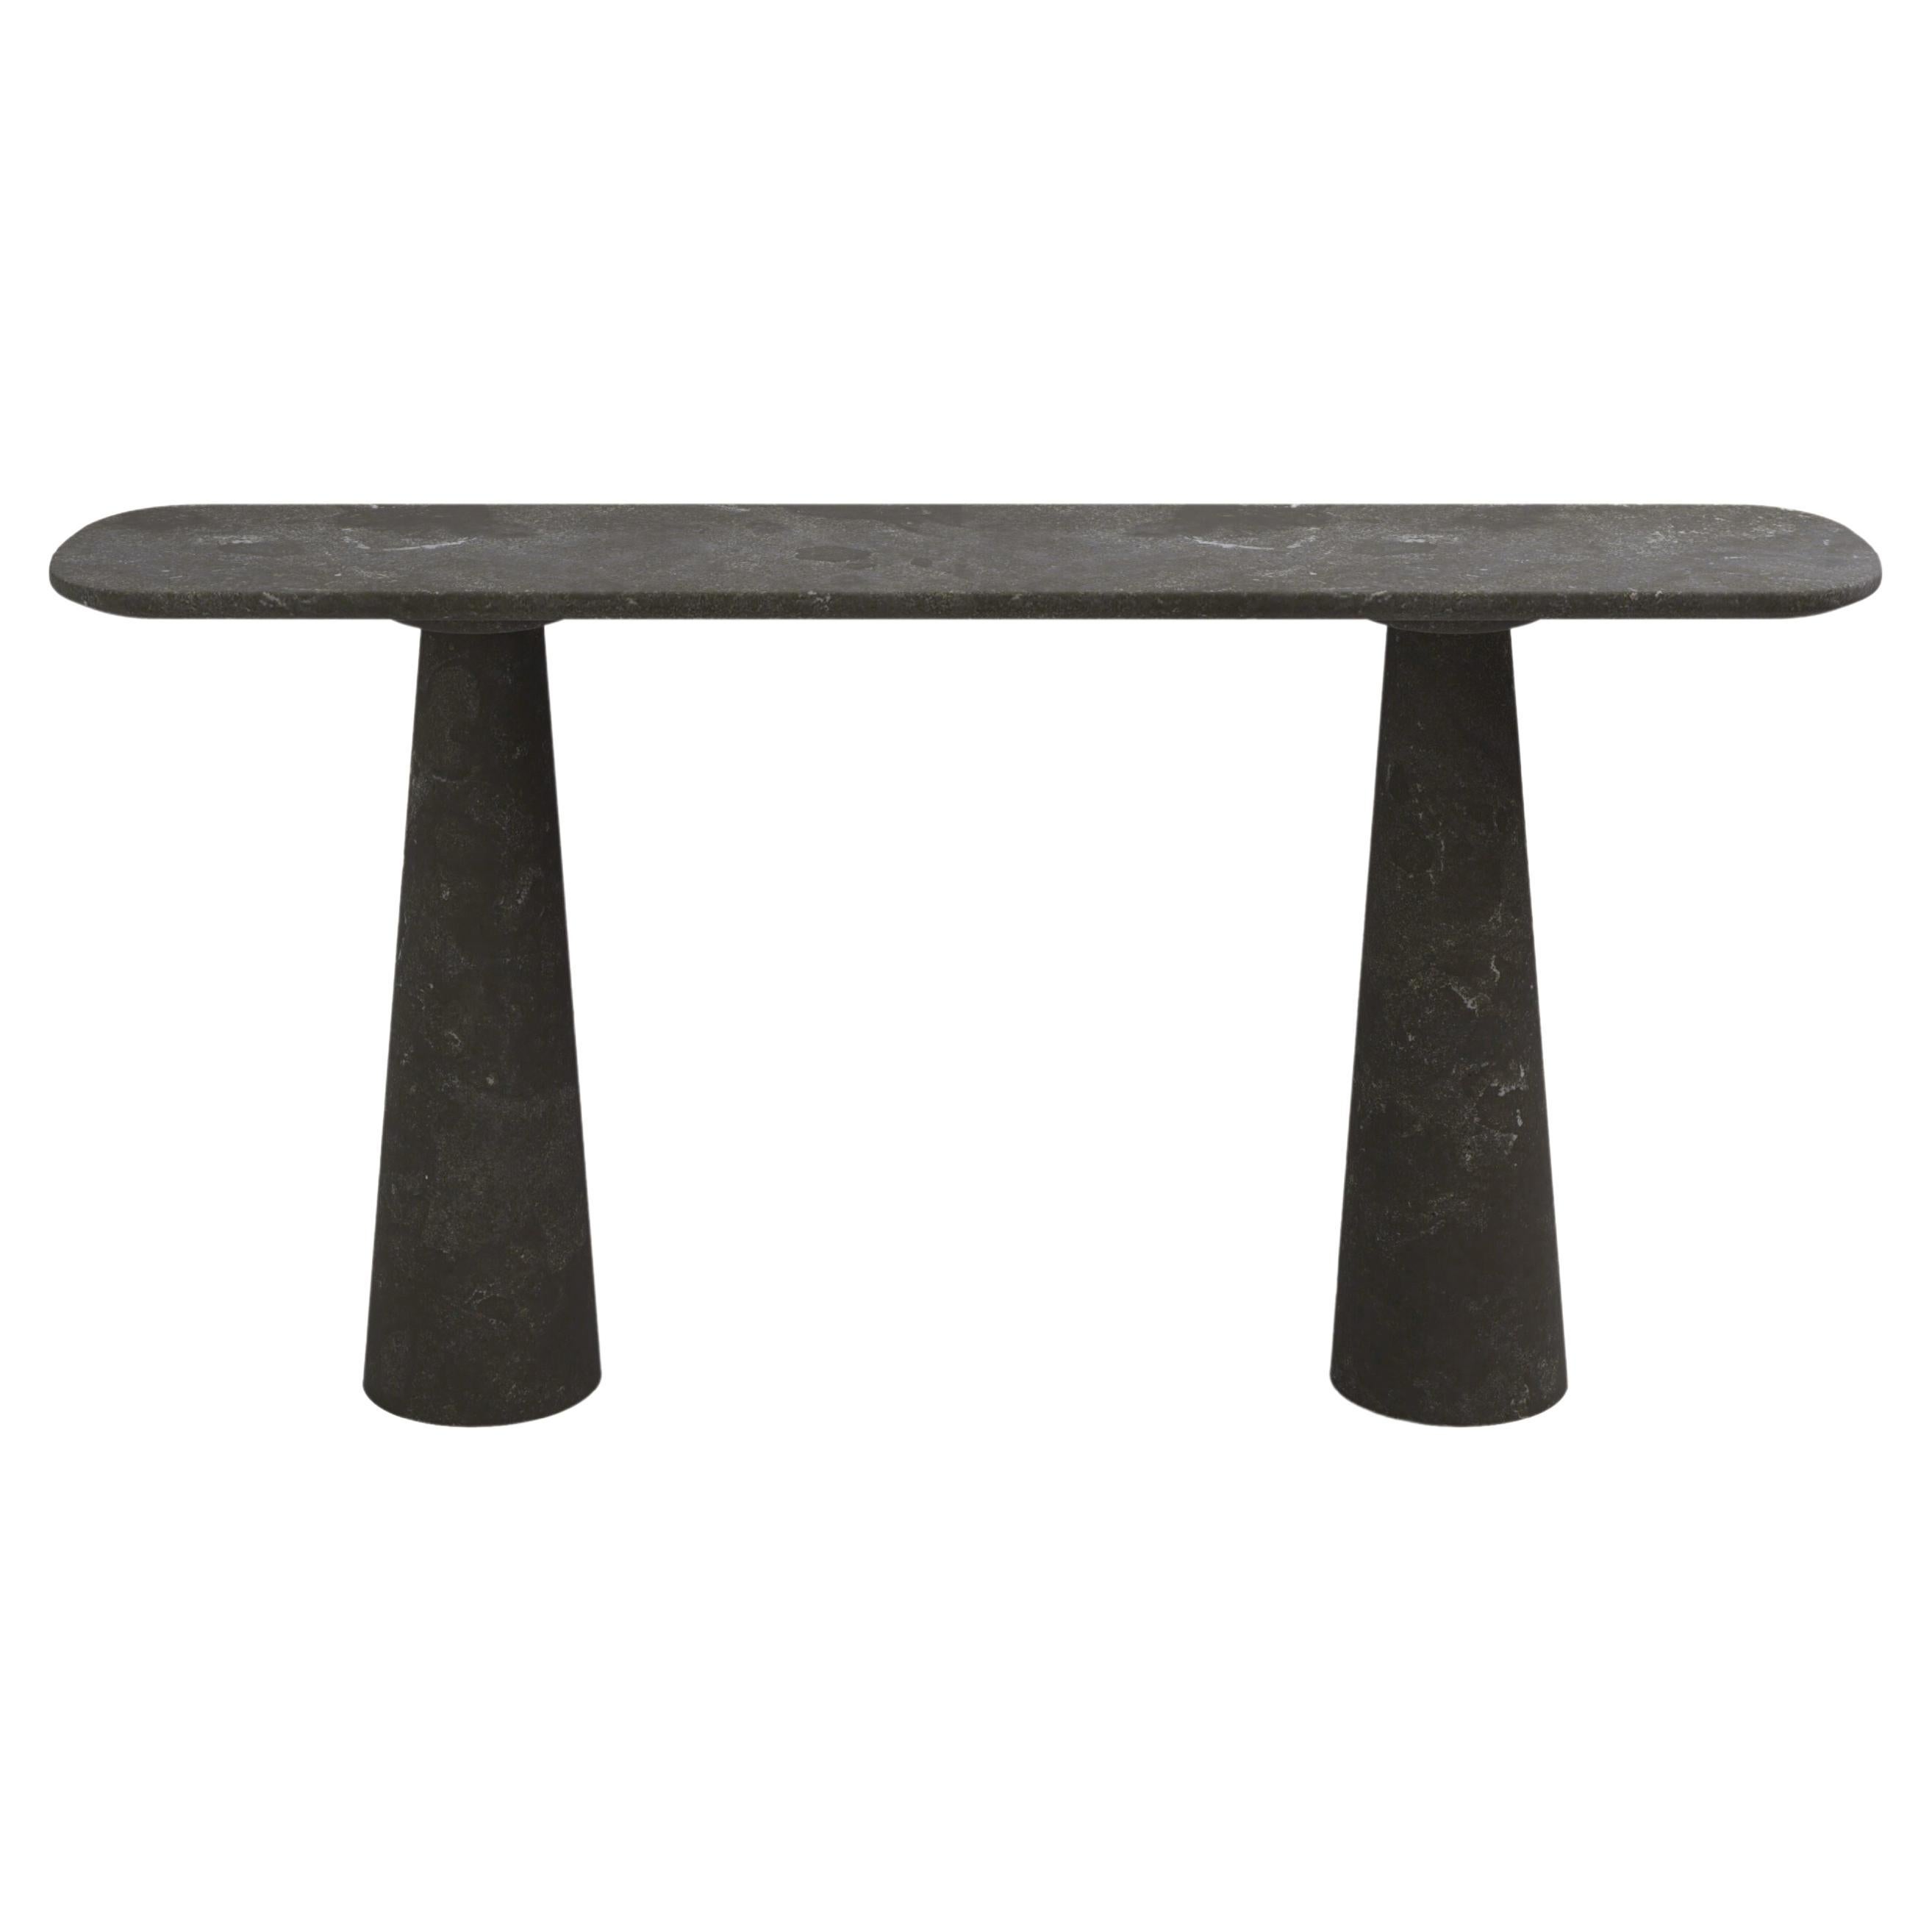 FORM(LA) Cono Console Table 60”L x 15”W x 33”H Nero Petite Granite